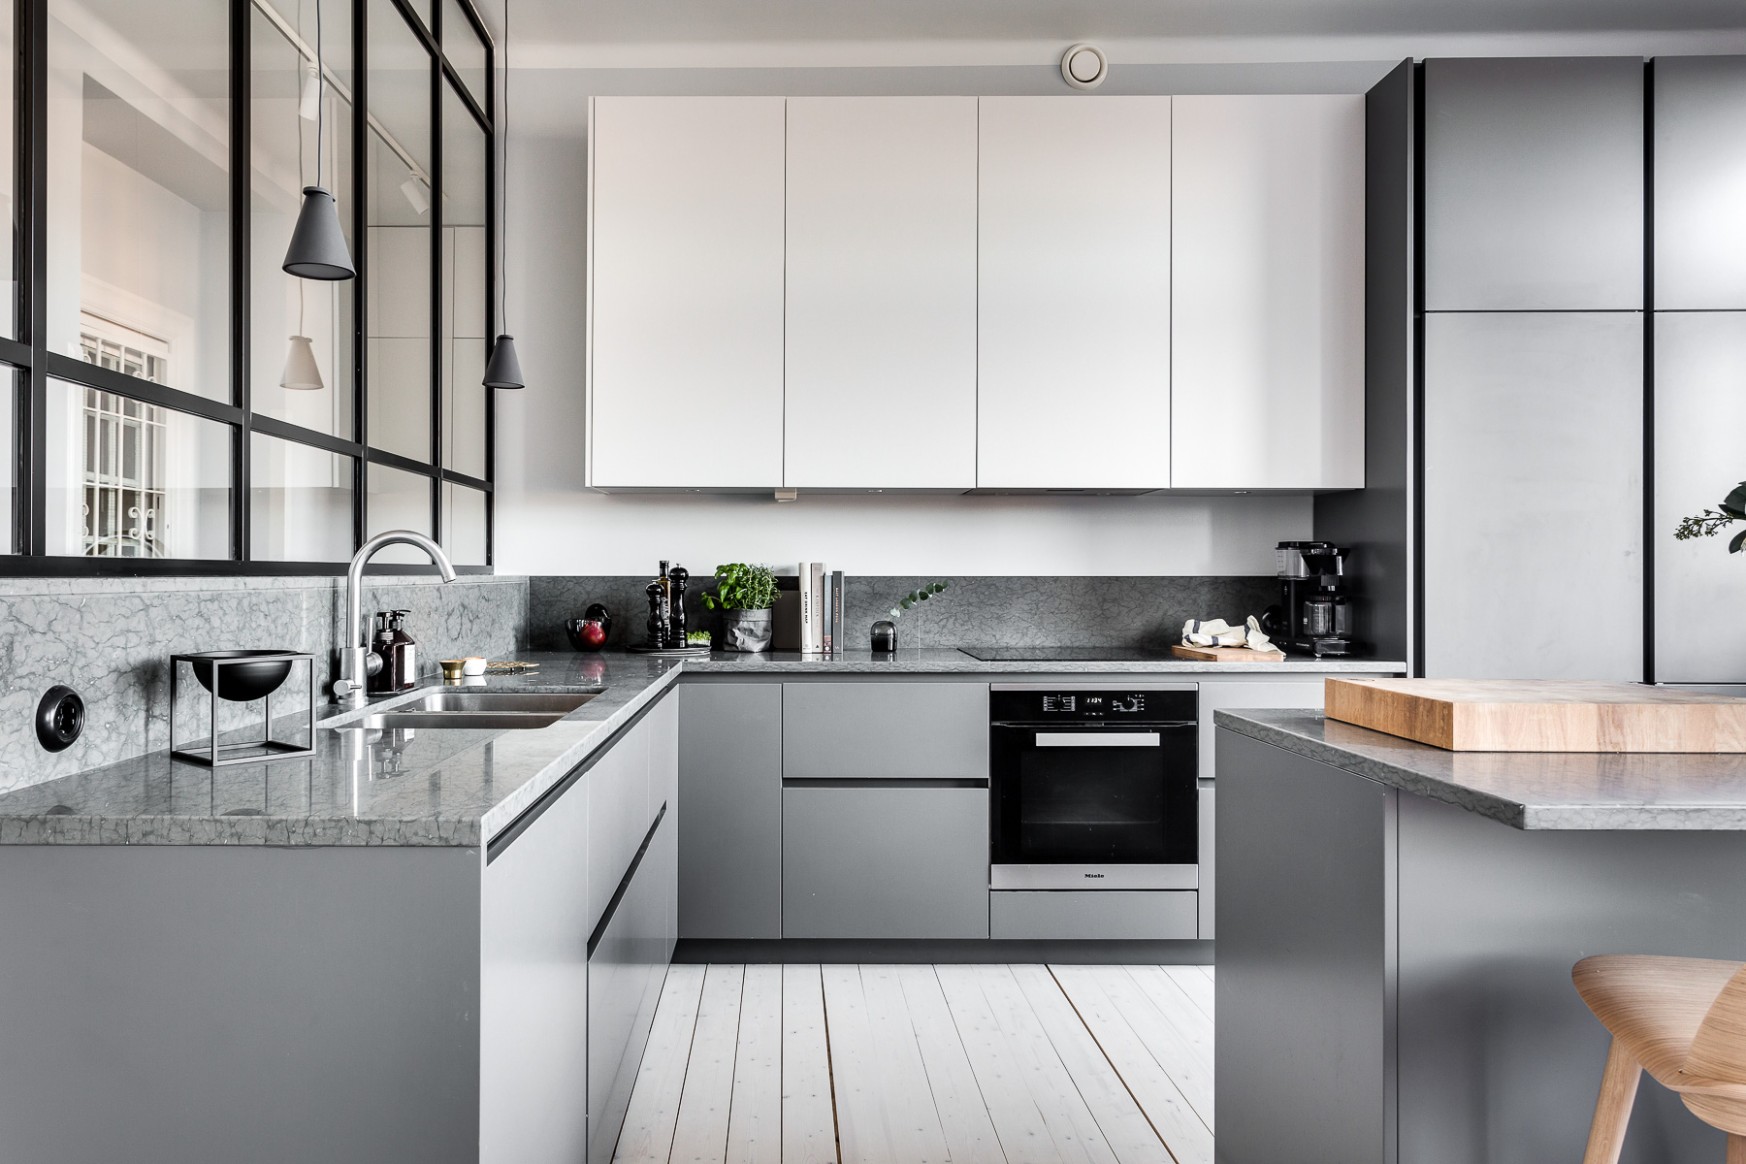 Modern Gray Kitchen Cabinets Beat Monotony With Style - modern grey kitchen cabinets